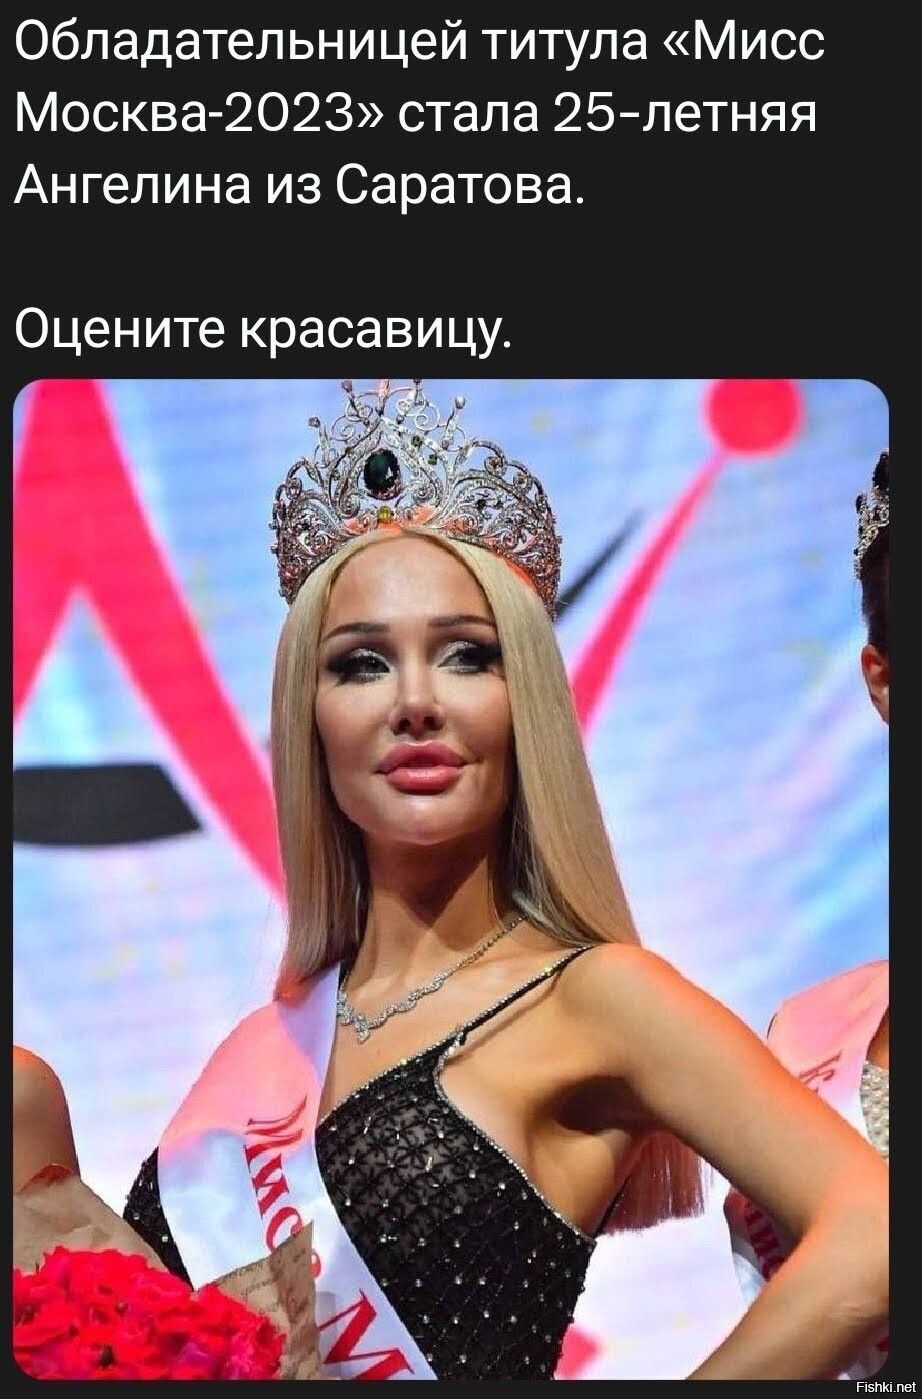 Если это "Мисс Москва 2023" то я чуть чуть не дотягиваю до Мишустина 